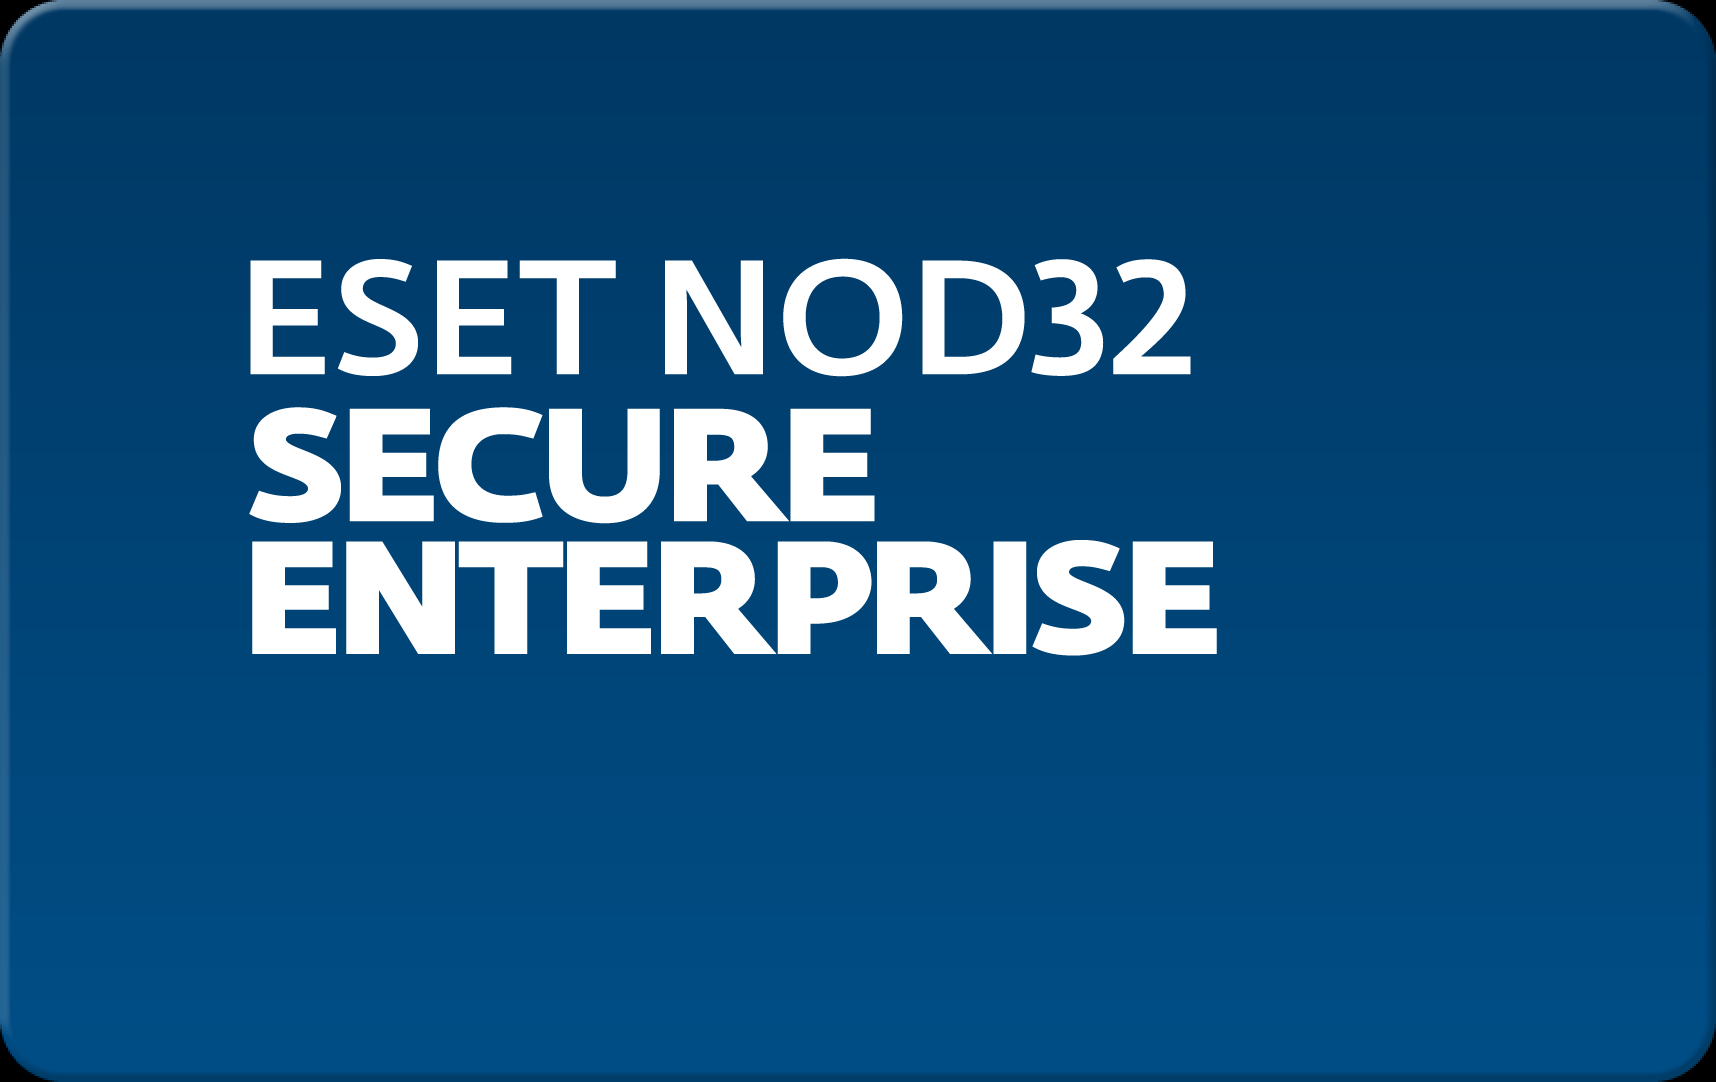        Eset NOD32 Secure Enterprise  141 